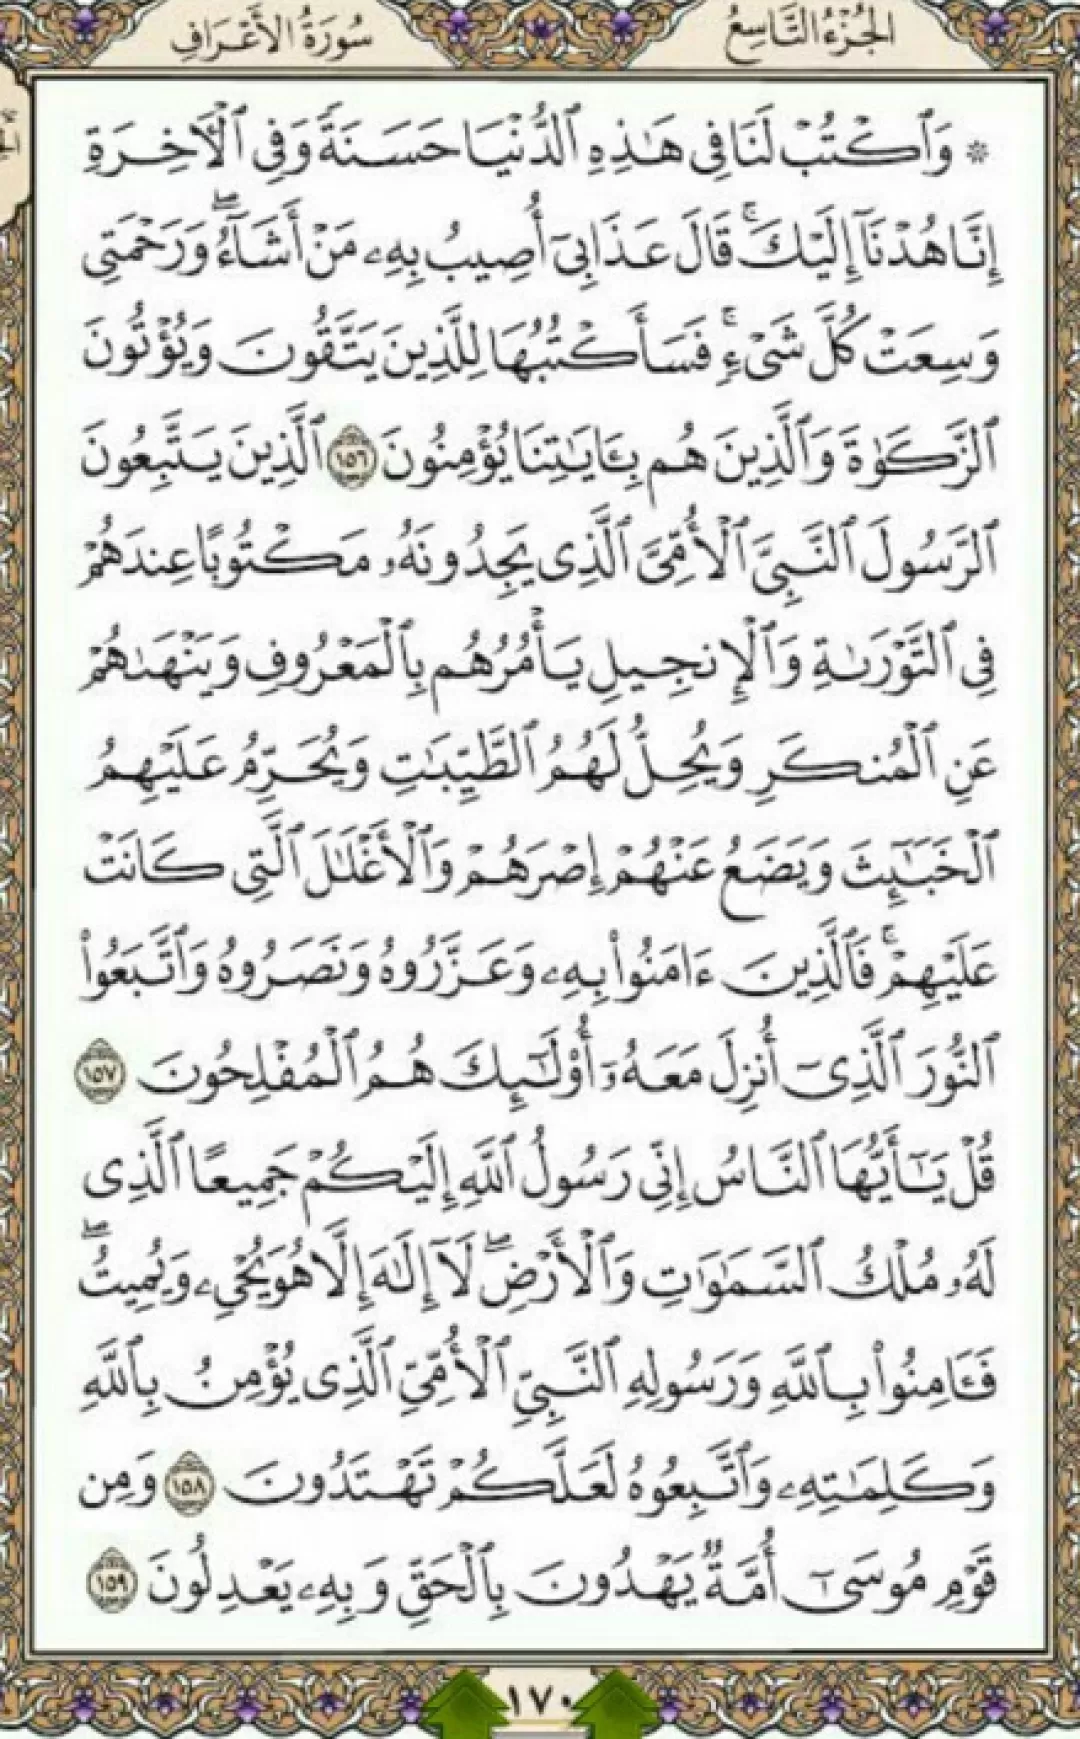 یک صفحه با شمیم الهی قرآن